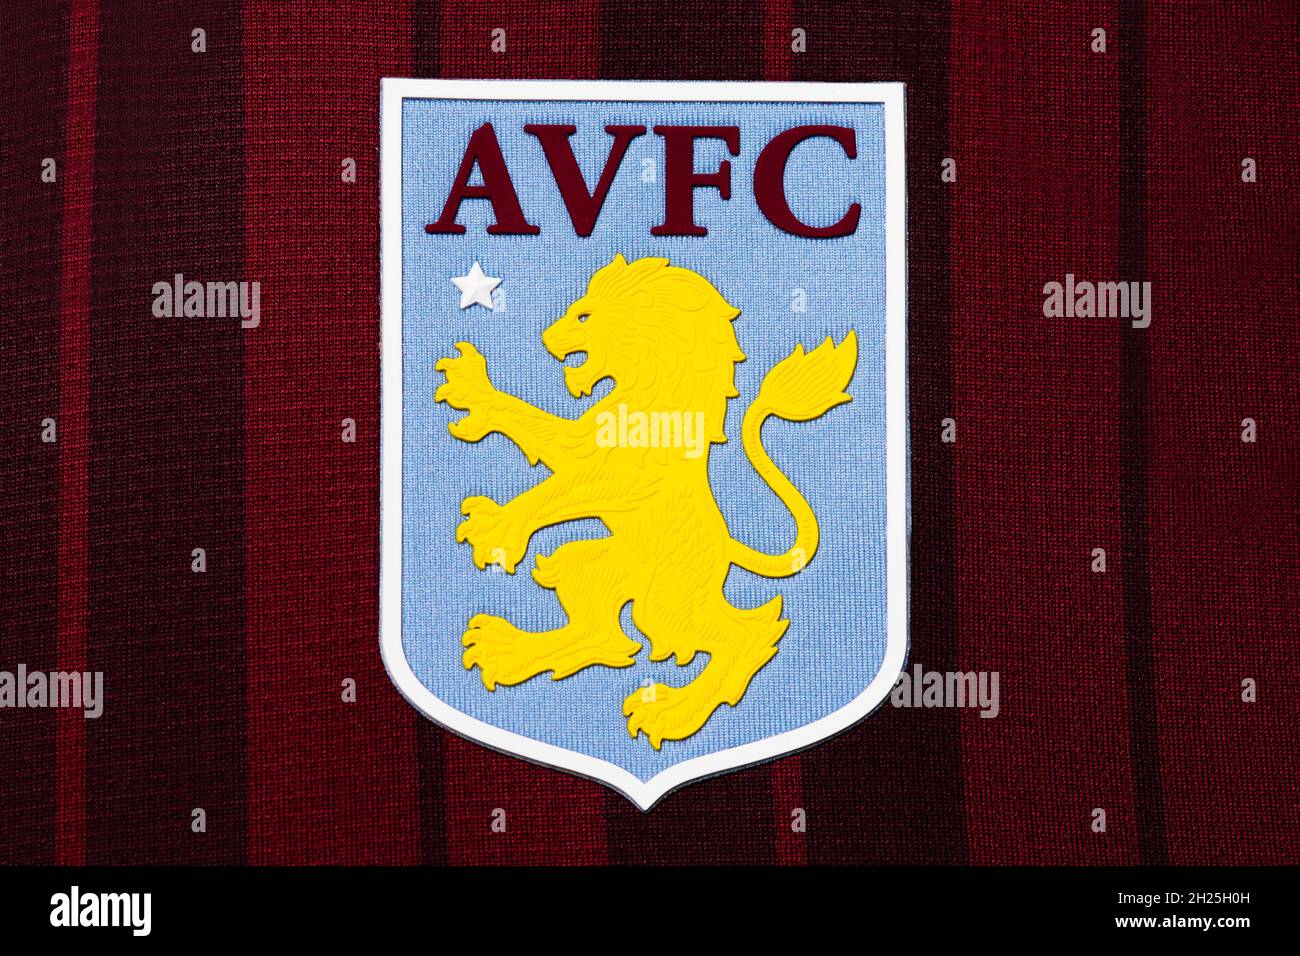 Primer plano del escudo del club de Aston Villa. Foto de stock